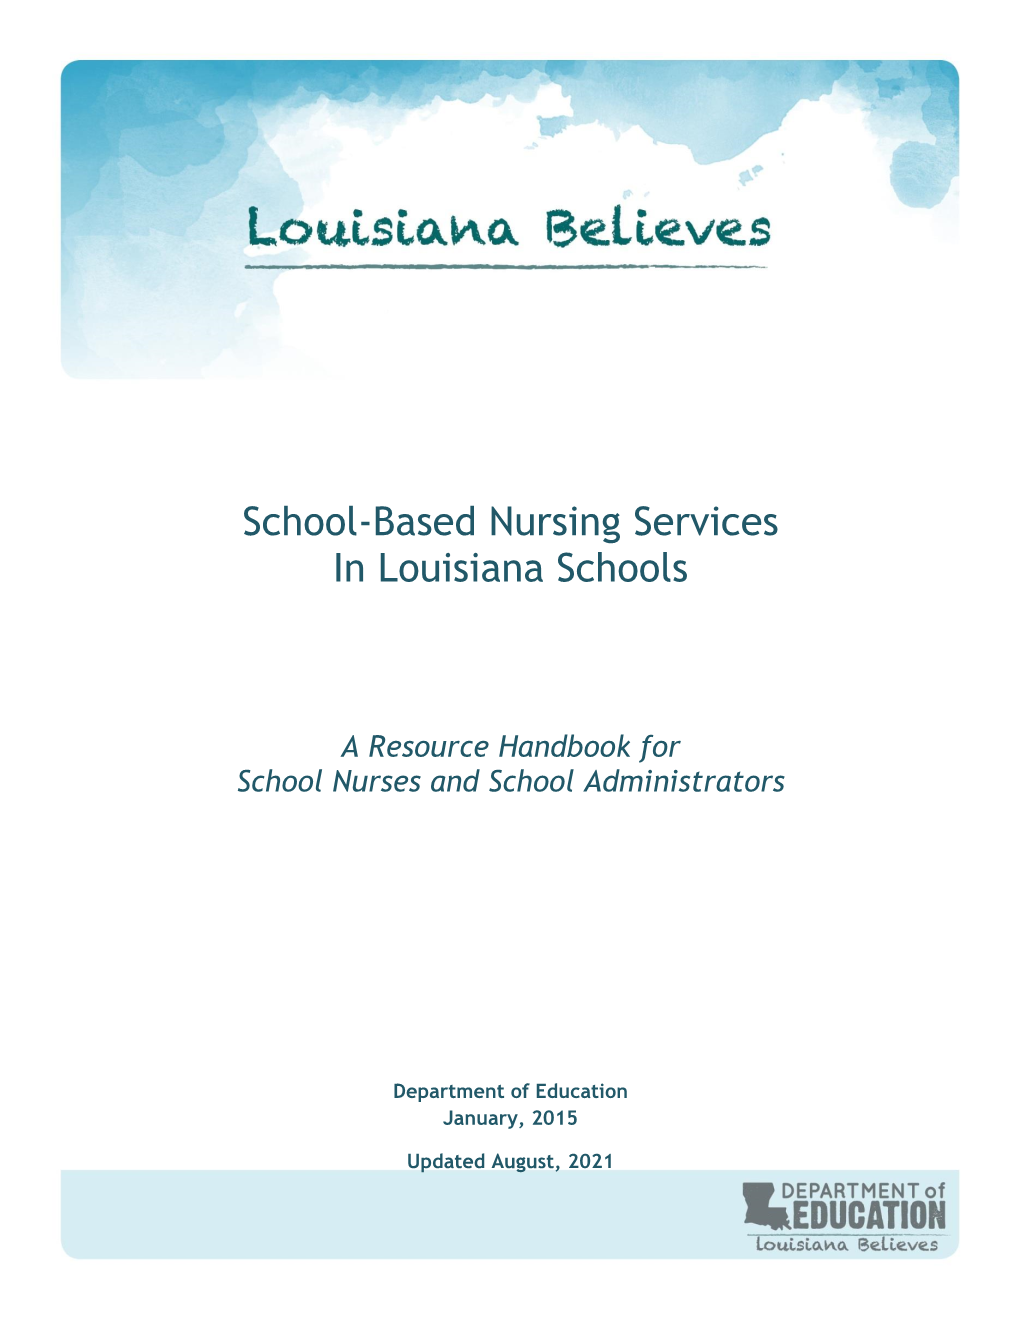 School-Based Nursing Services in Louisiana Schools